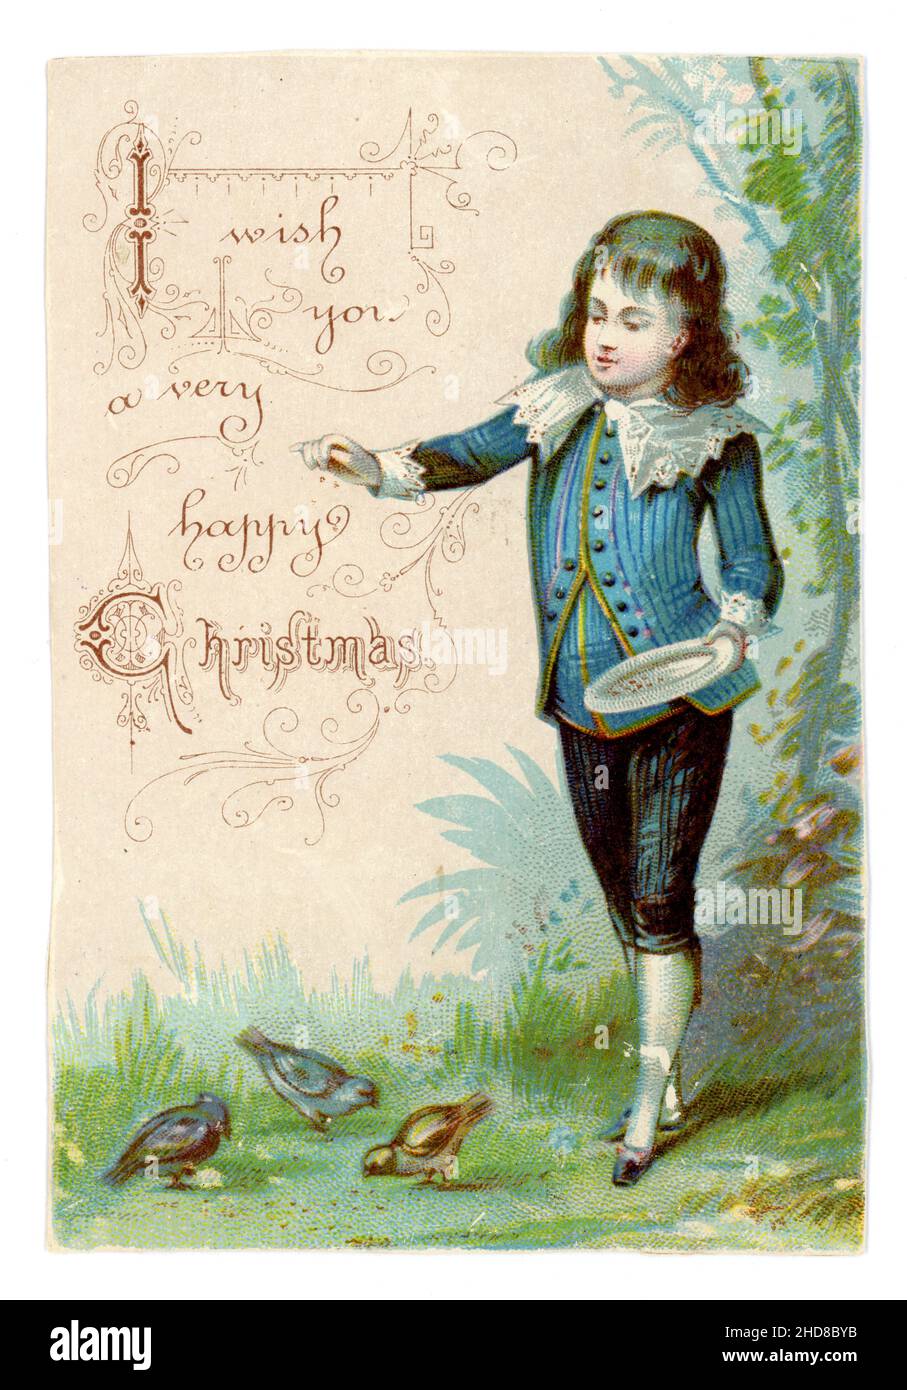 Original viktorianischen Scrapbook Weihnachtskarte Schneiden - Junge mit langen Haaren in Little Lord Fauntleroy Anzug, Fütterung Vögel, Weihnachtsgrüße, Ende 1890, Großbritannien Stockfoto